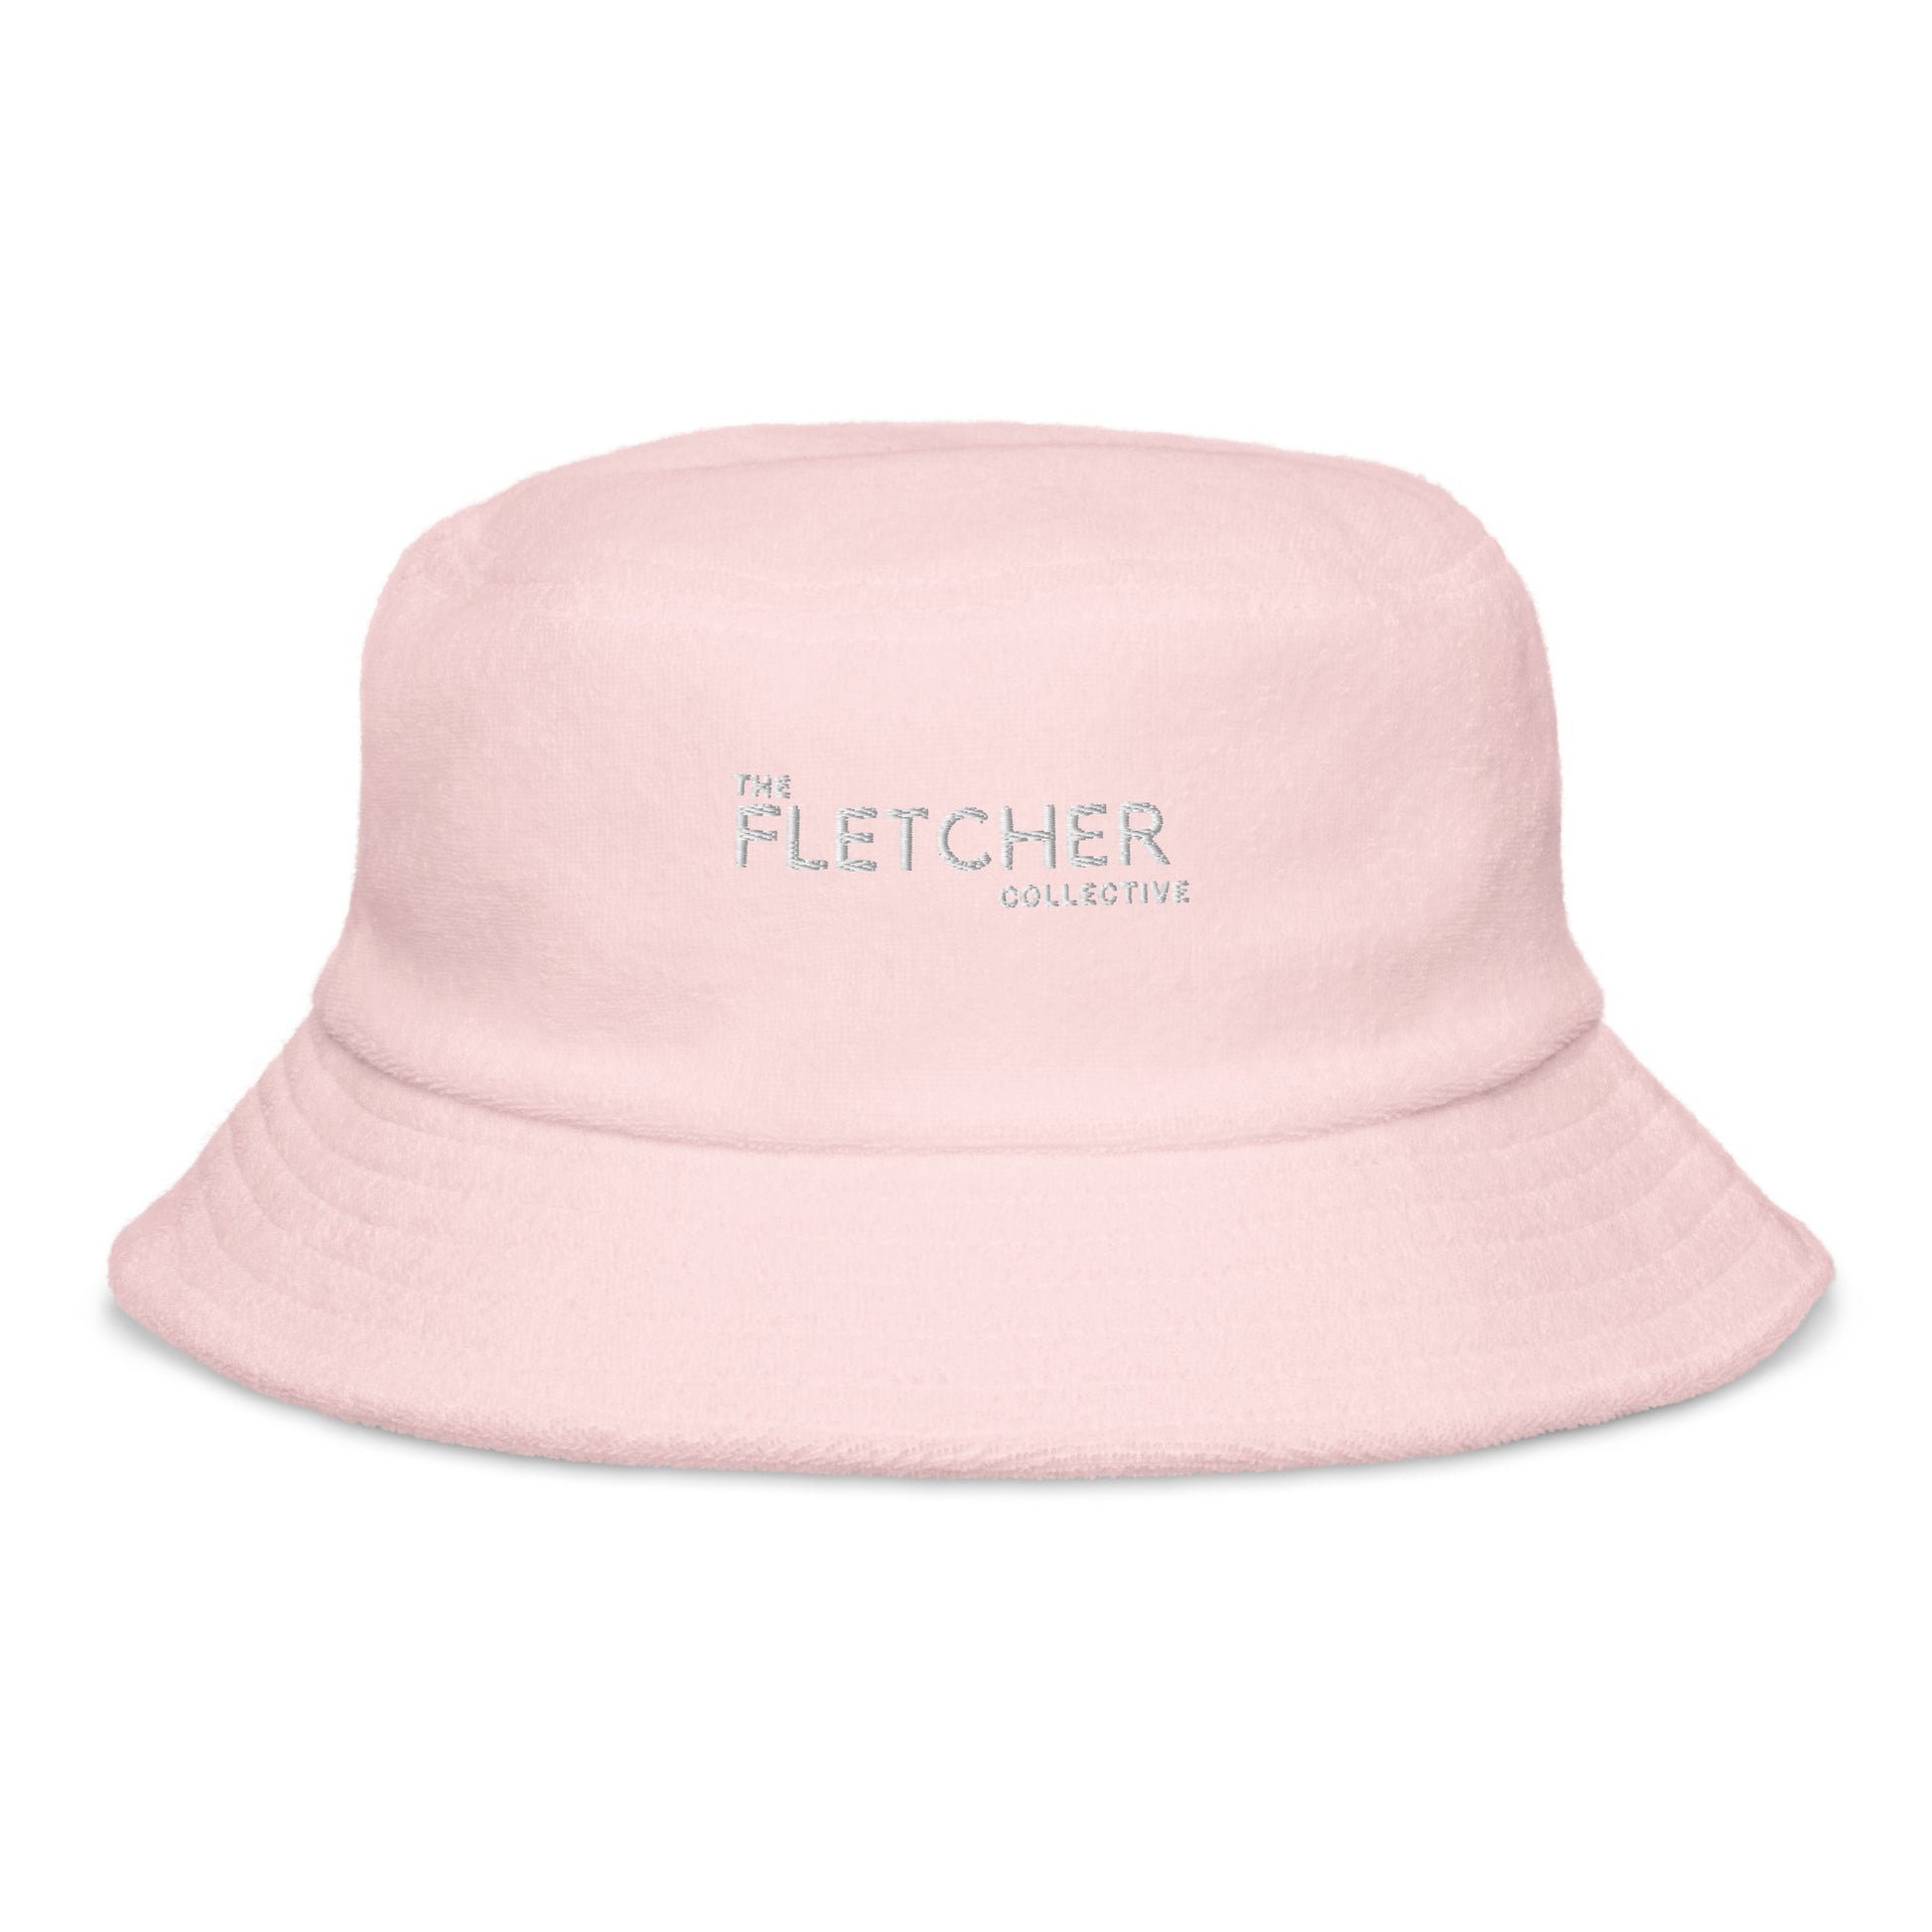 I'm a Subscriber Terry Cloth Bucket Hat – Shop LA Times